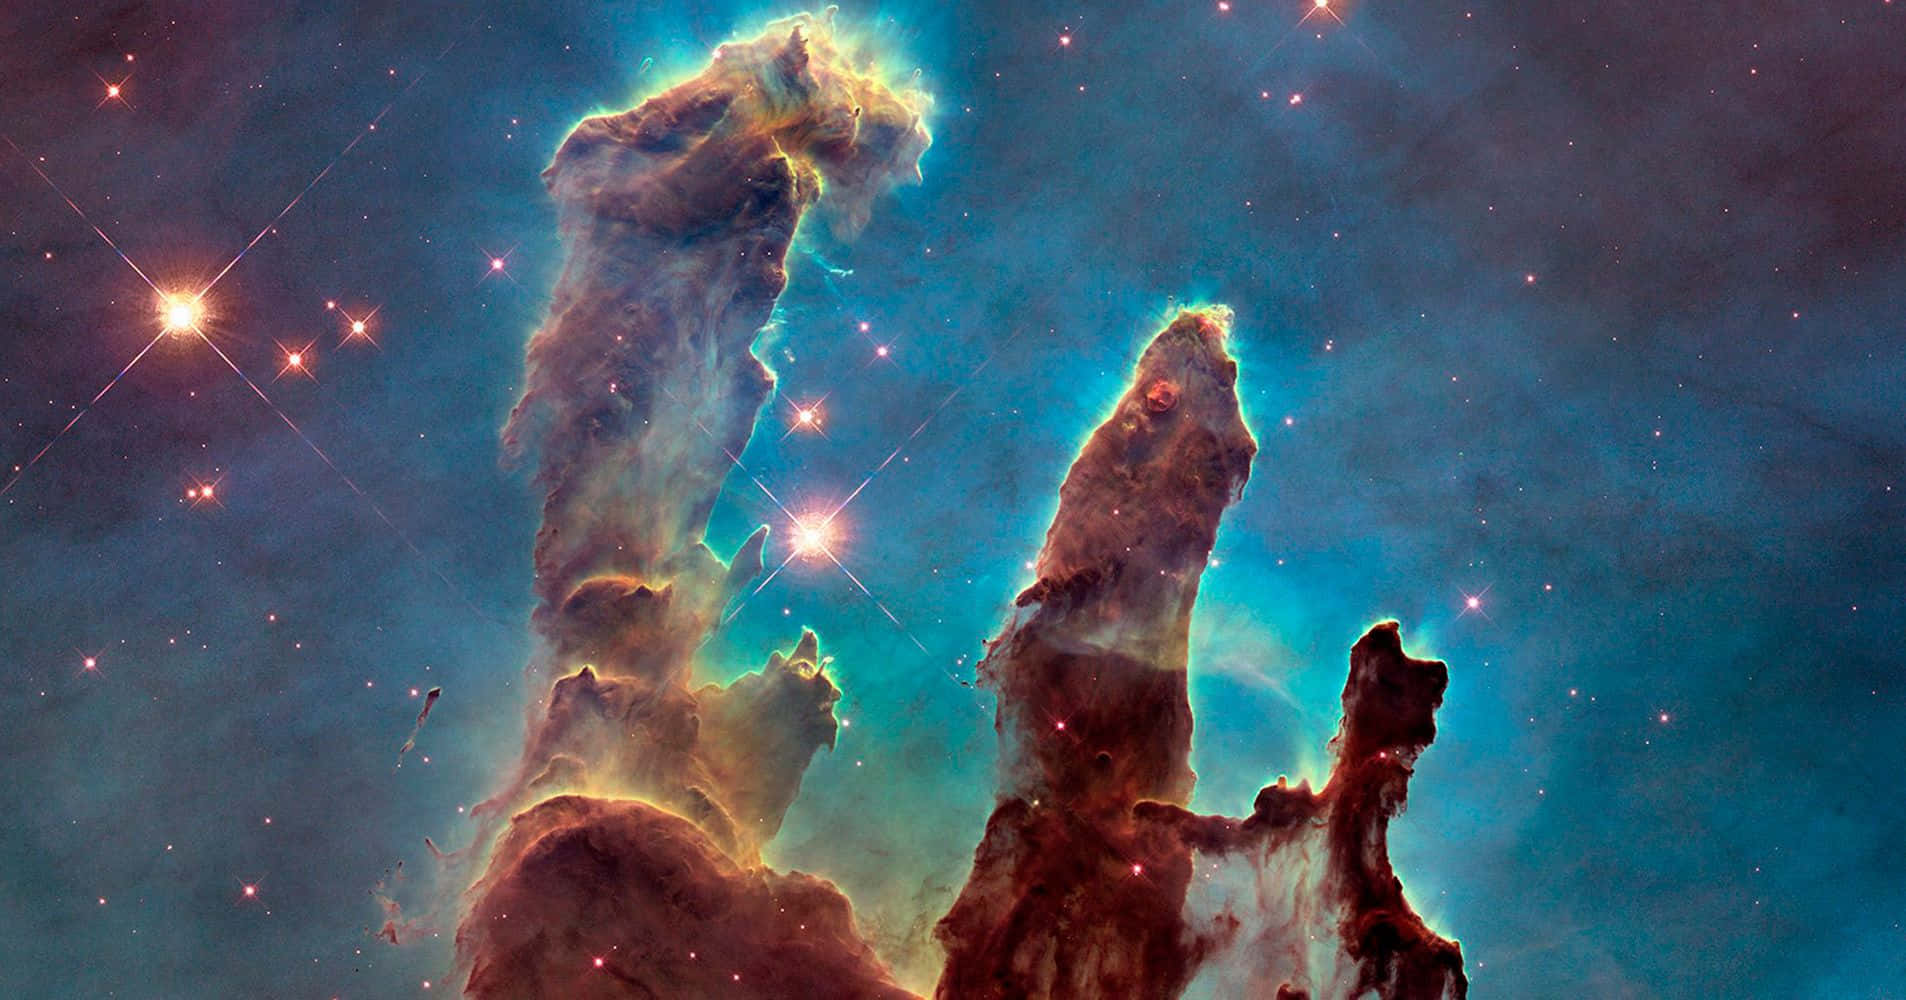 Enpanoramautsikt Över Vintergatan, Som Ses Från Jorden Genom Hubble-teleskopets Ögon.